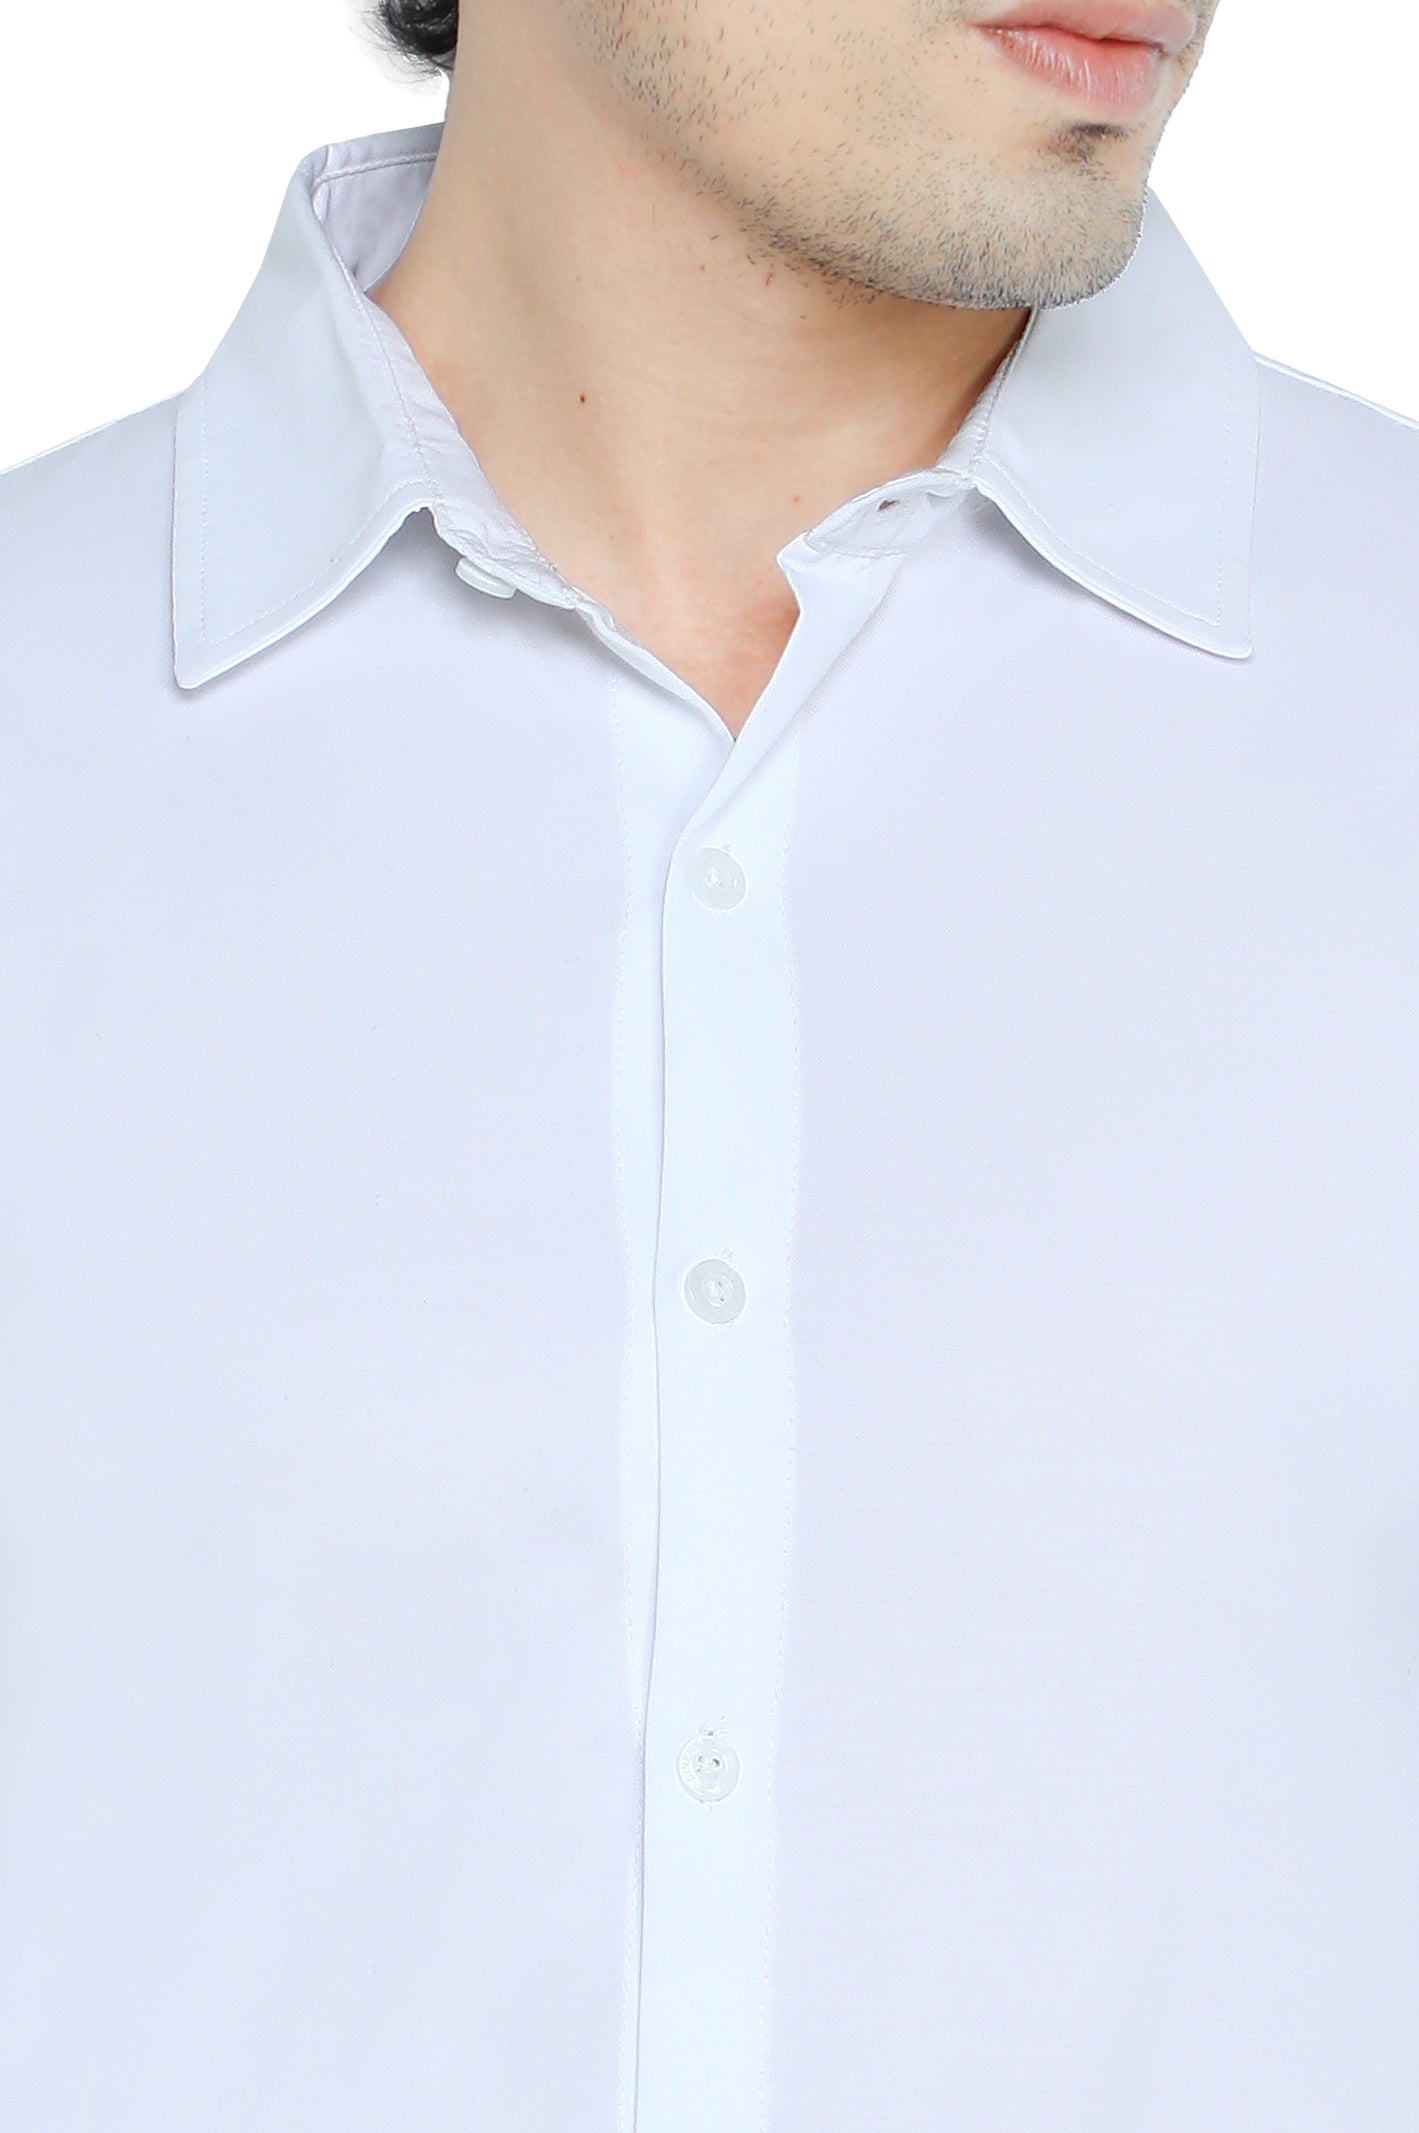 Diner's Men's T-Shirt SKU: NA765-WHITE - Diners